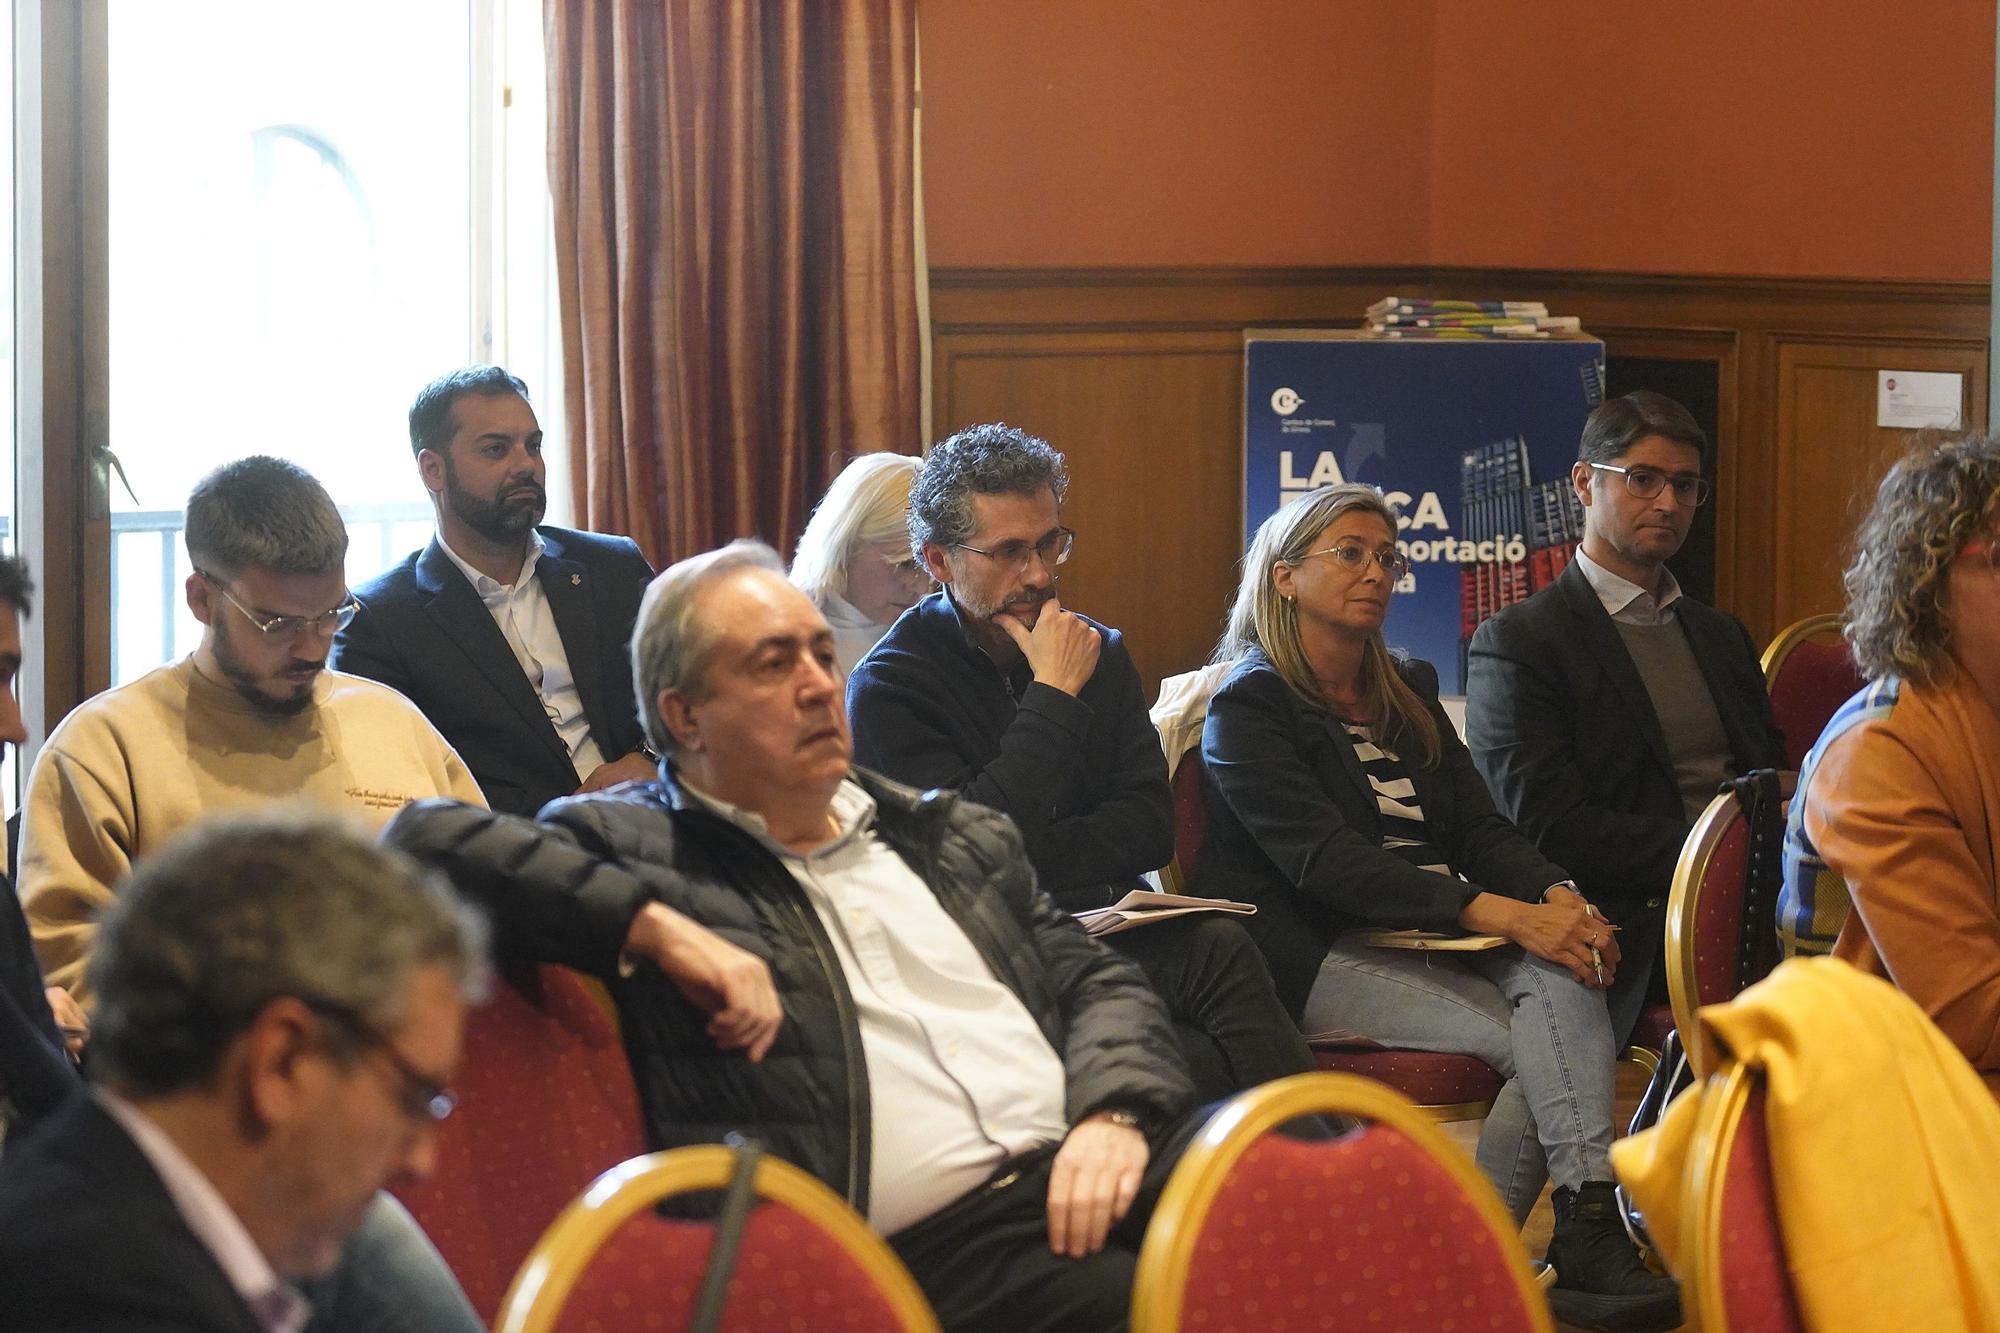 Experts analitzen la situació i les perspectives de l'economia a Girona